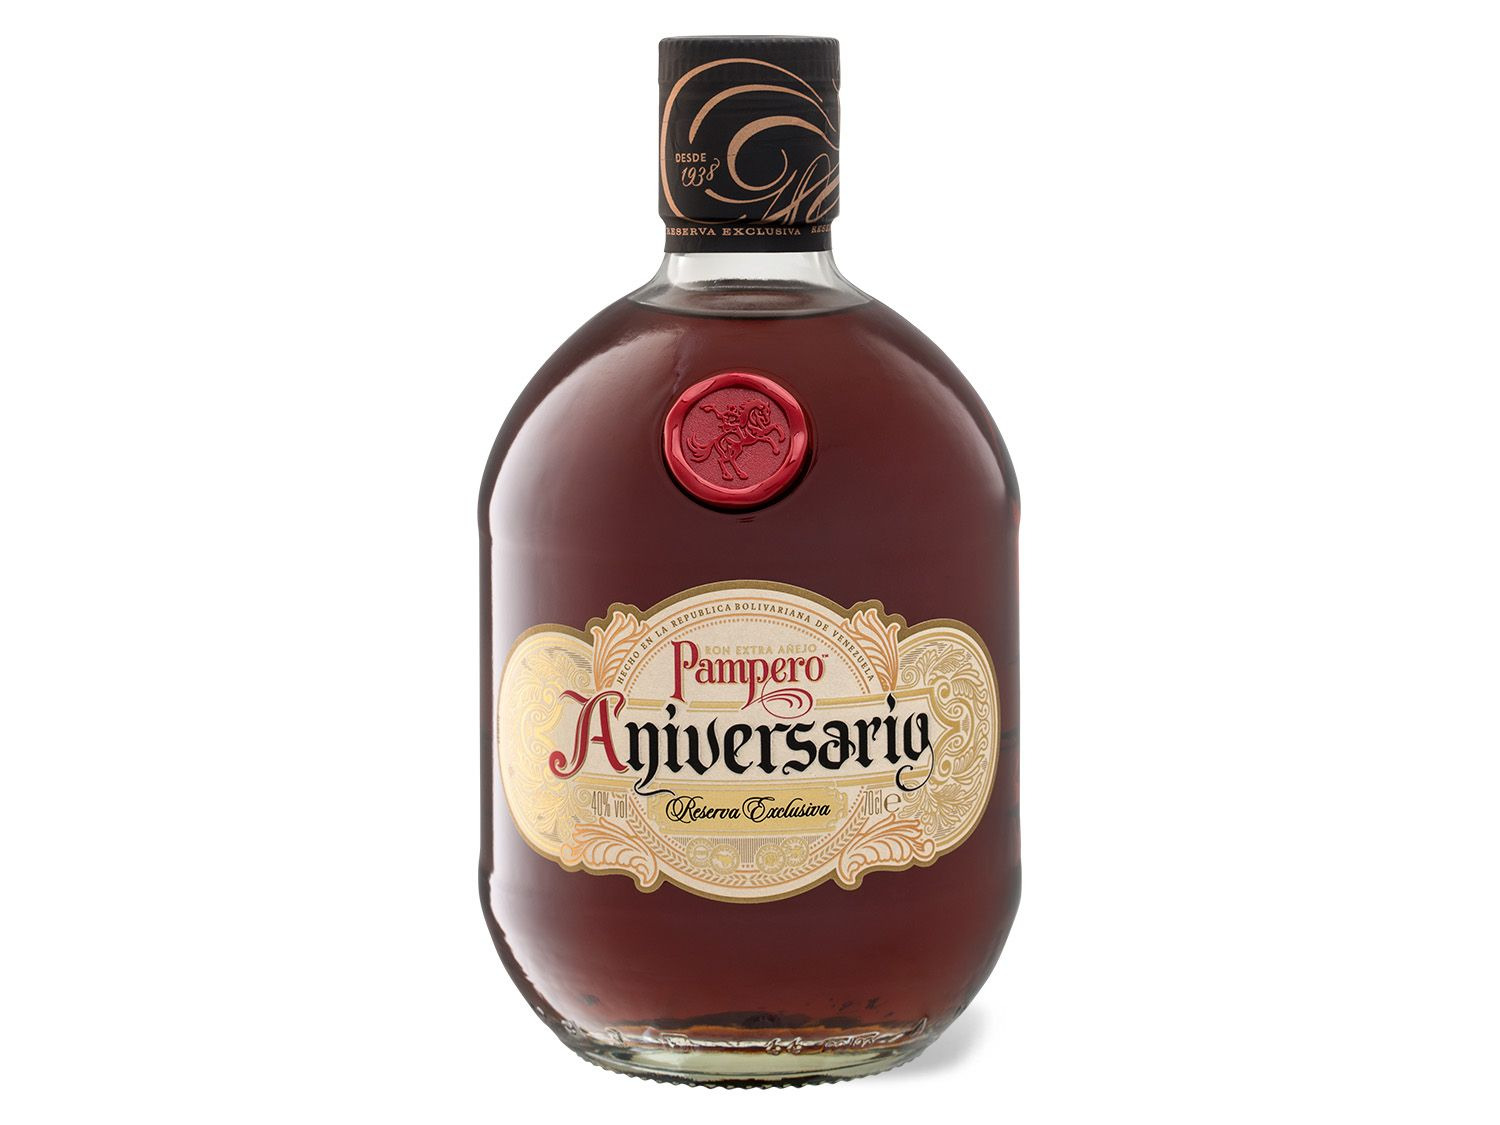 PAMPERO Rum Exclusiva Led… Aniversario Reserva in Añejo